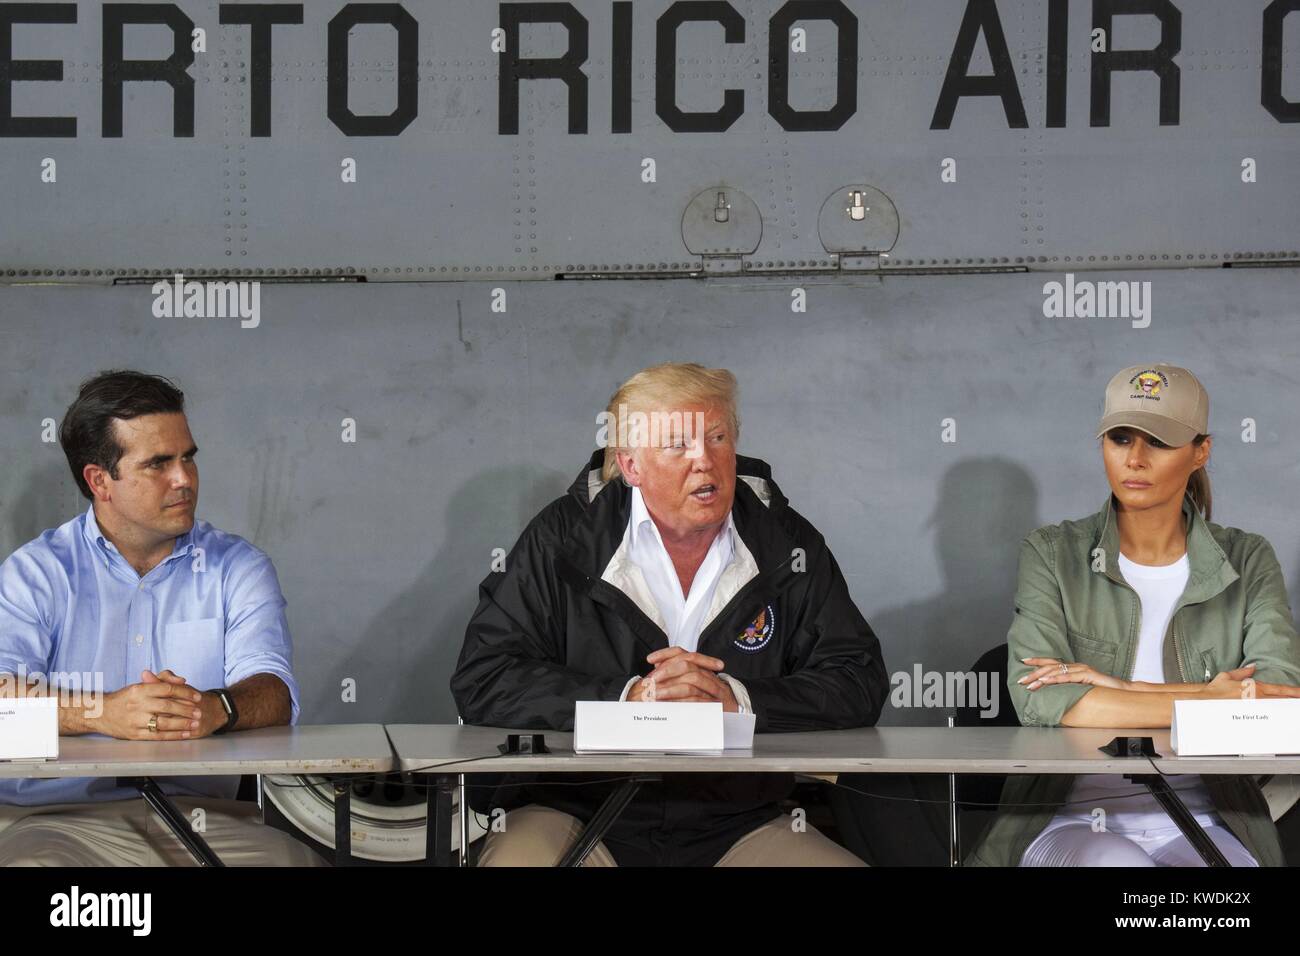 Gov. Ricardo Rosello, le Président Donald Trump, et Melania Trump à Carolina, Puerto Rico. Ils ont été informés sur les efforts de secours au cours d'une réunion à la base de la Garde nationale aérienne Muniz le 3 octobre 2017 (BSLOC   2017 18 177) Banque D'Images